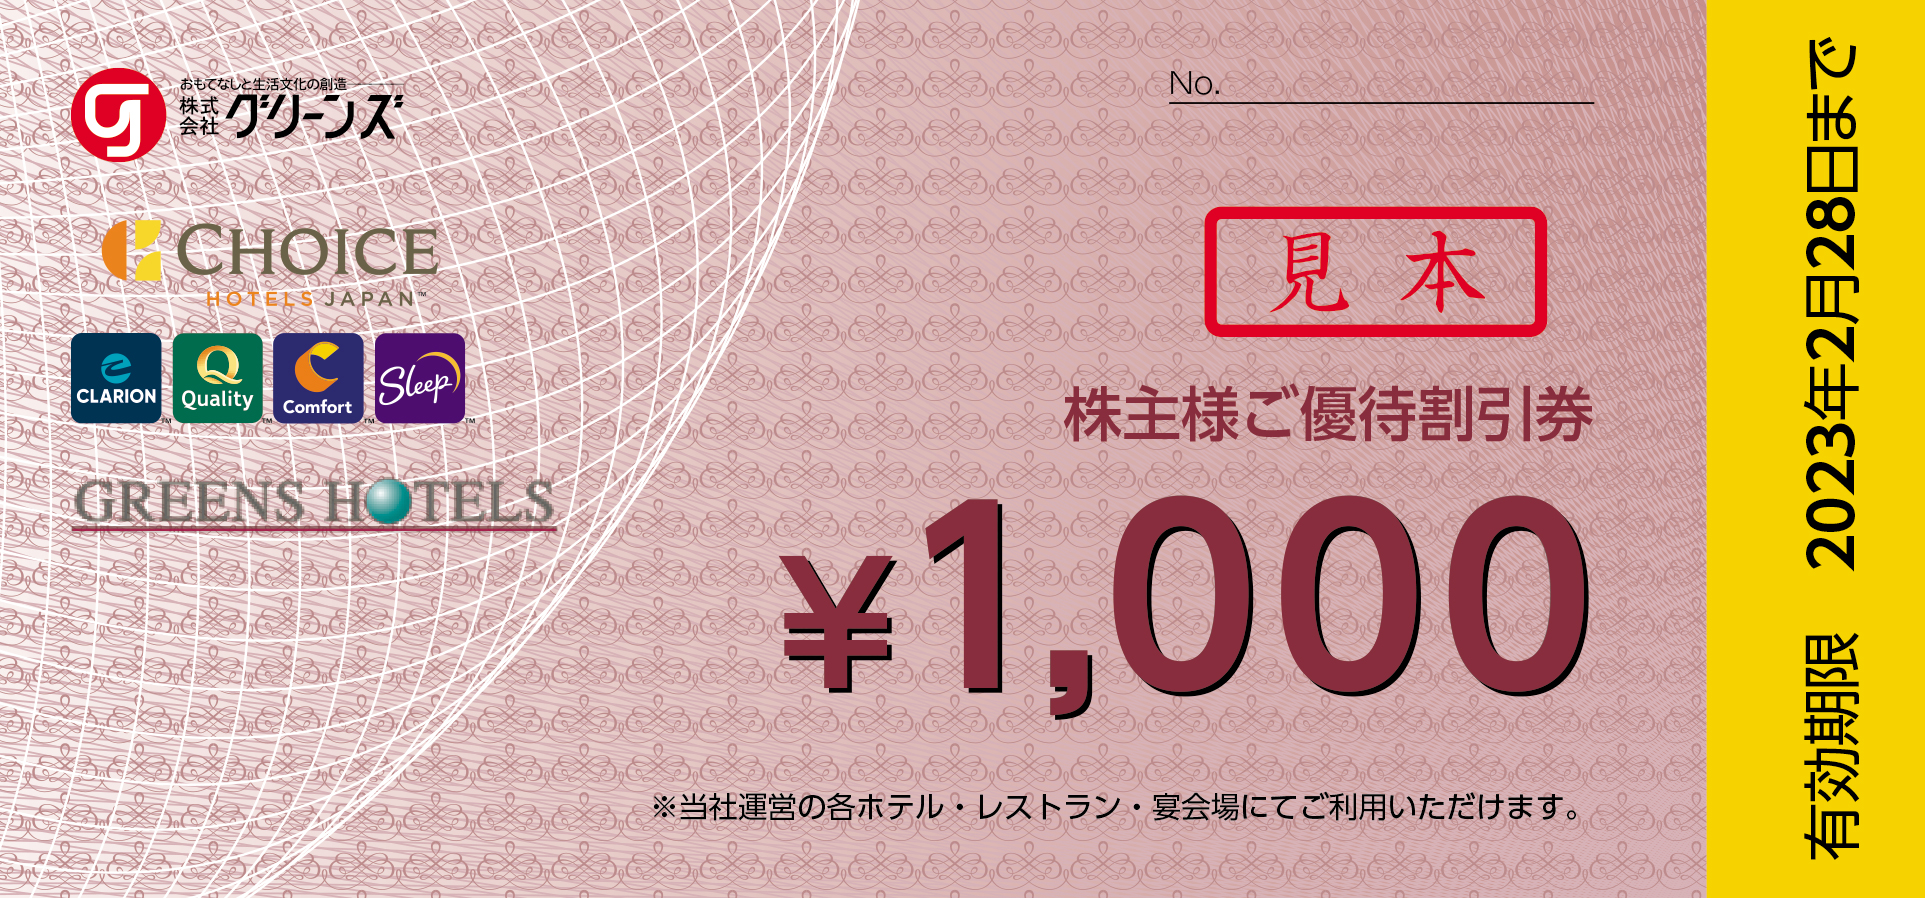 【おしゃれ】 グリーンズ 株主優待 8000円分 割引券